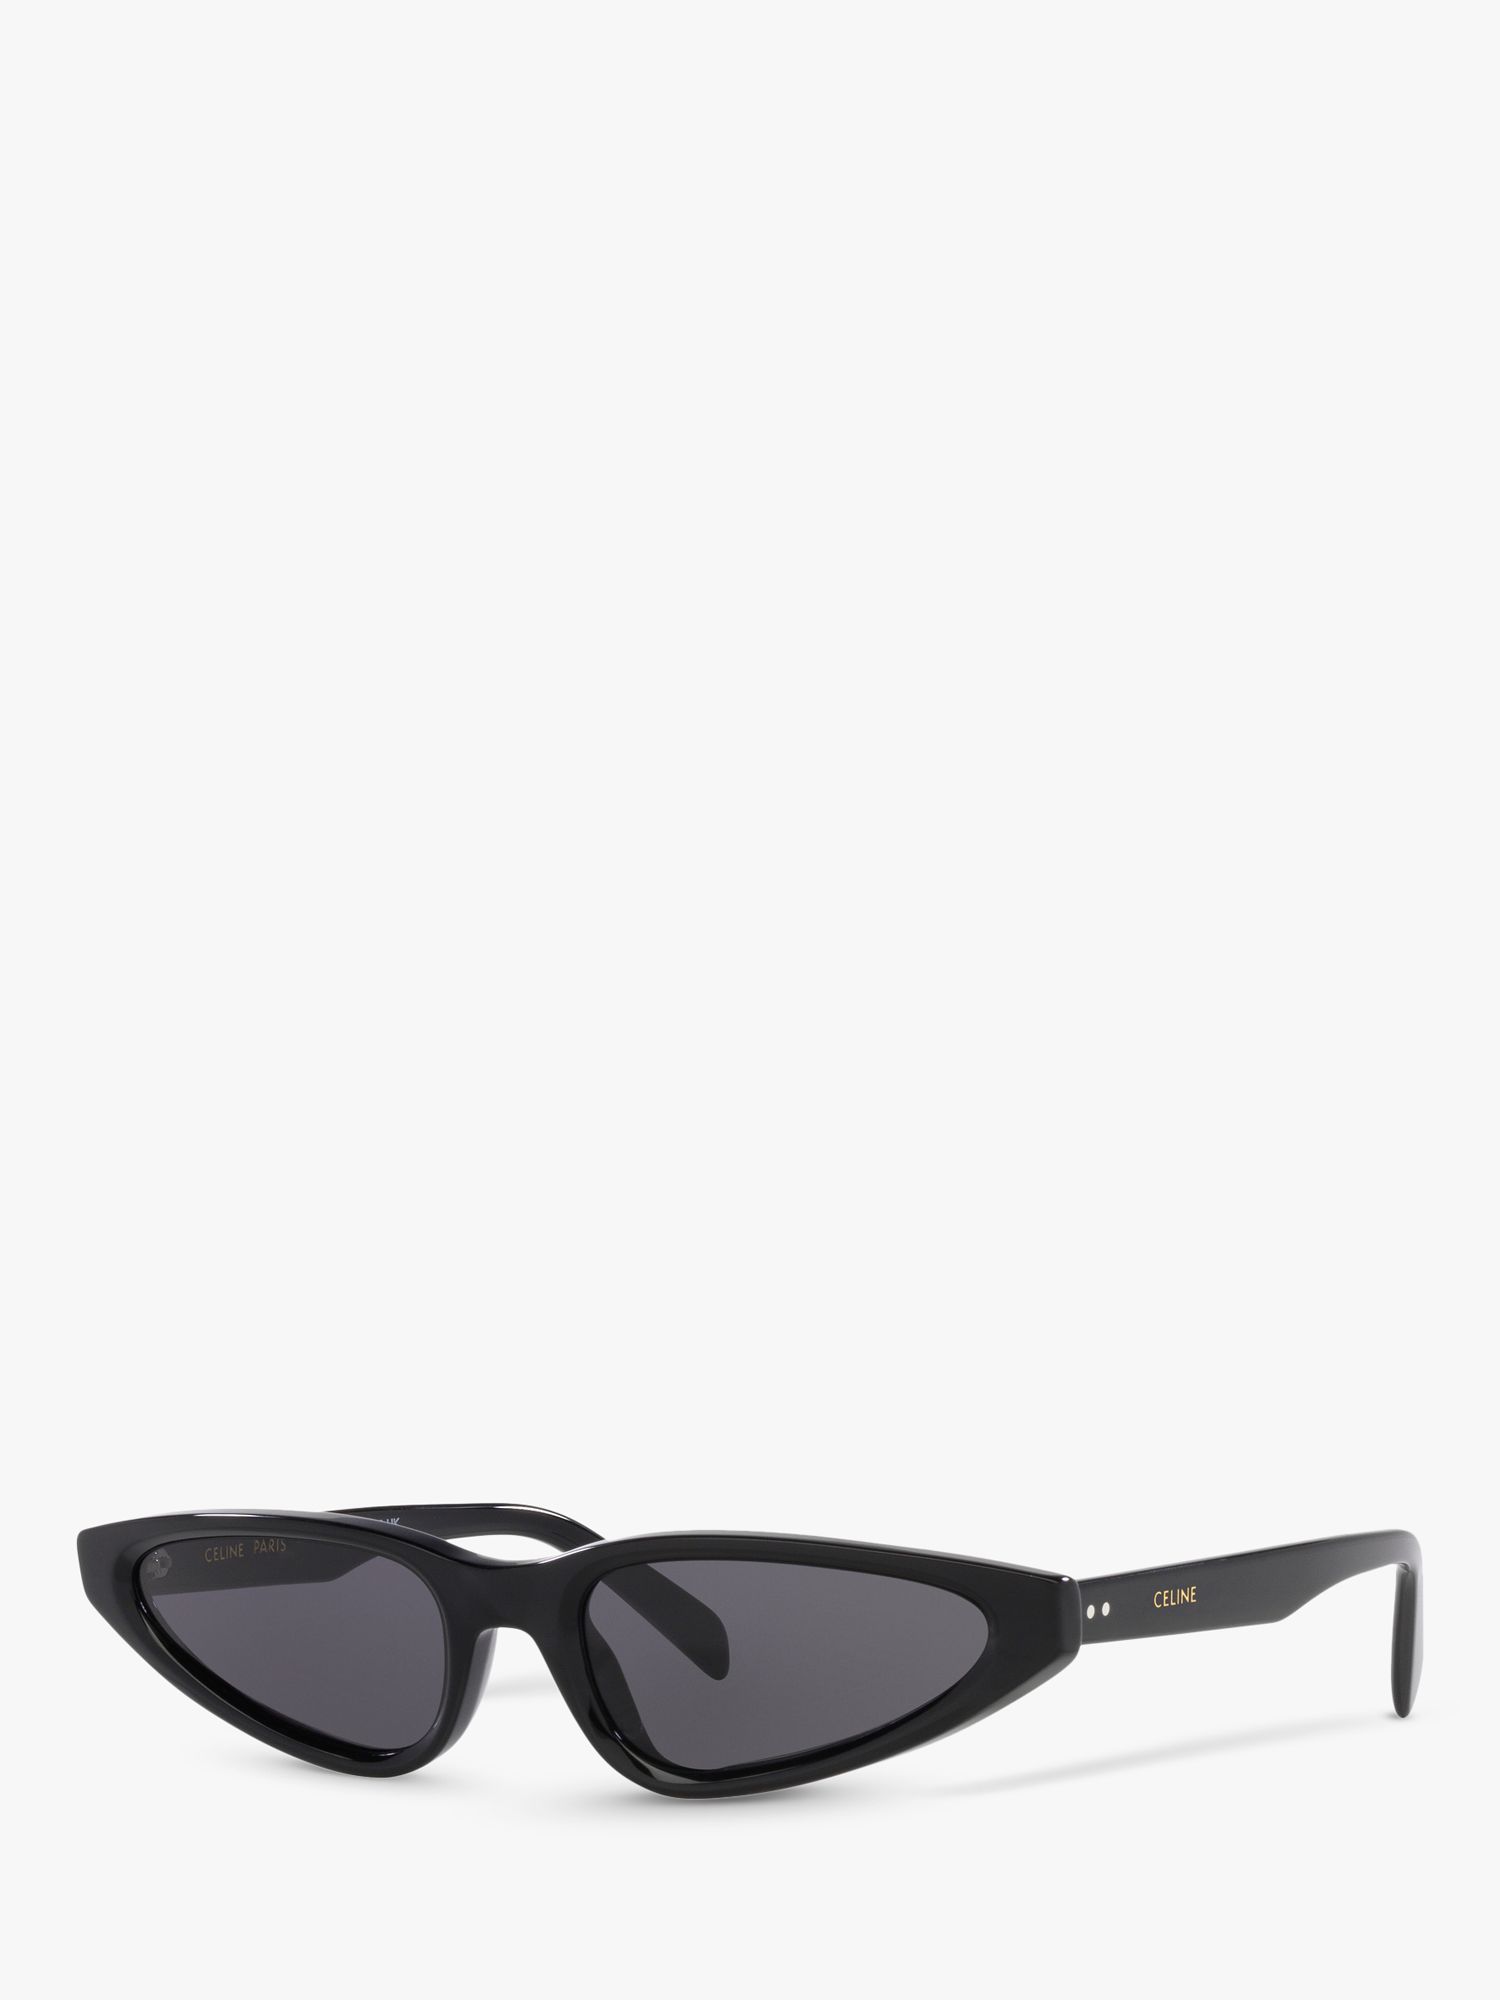 Женские треугольные солнцезащитные очки Celine CL40231I, блестящие черные/серые